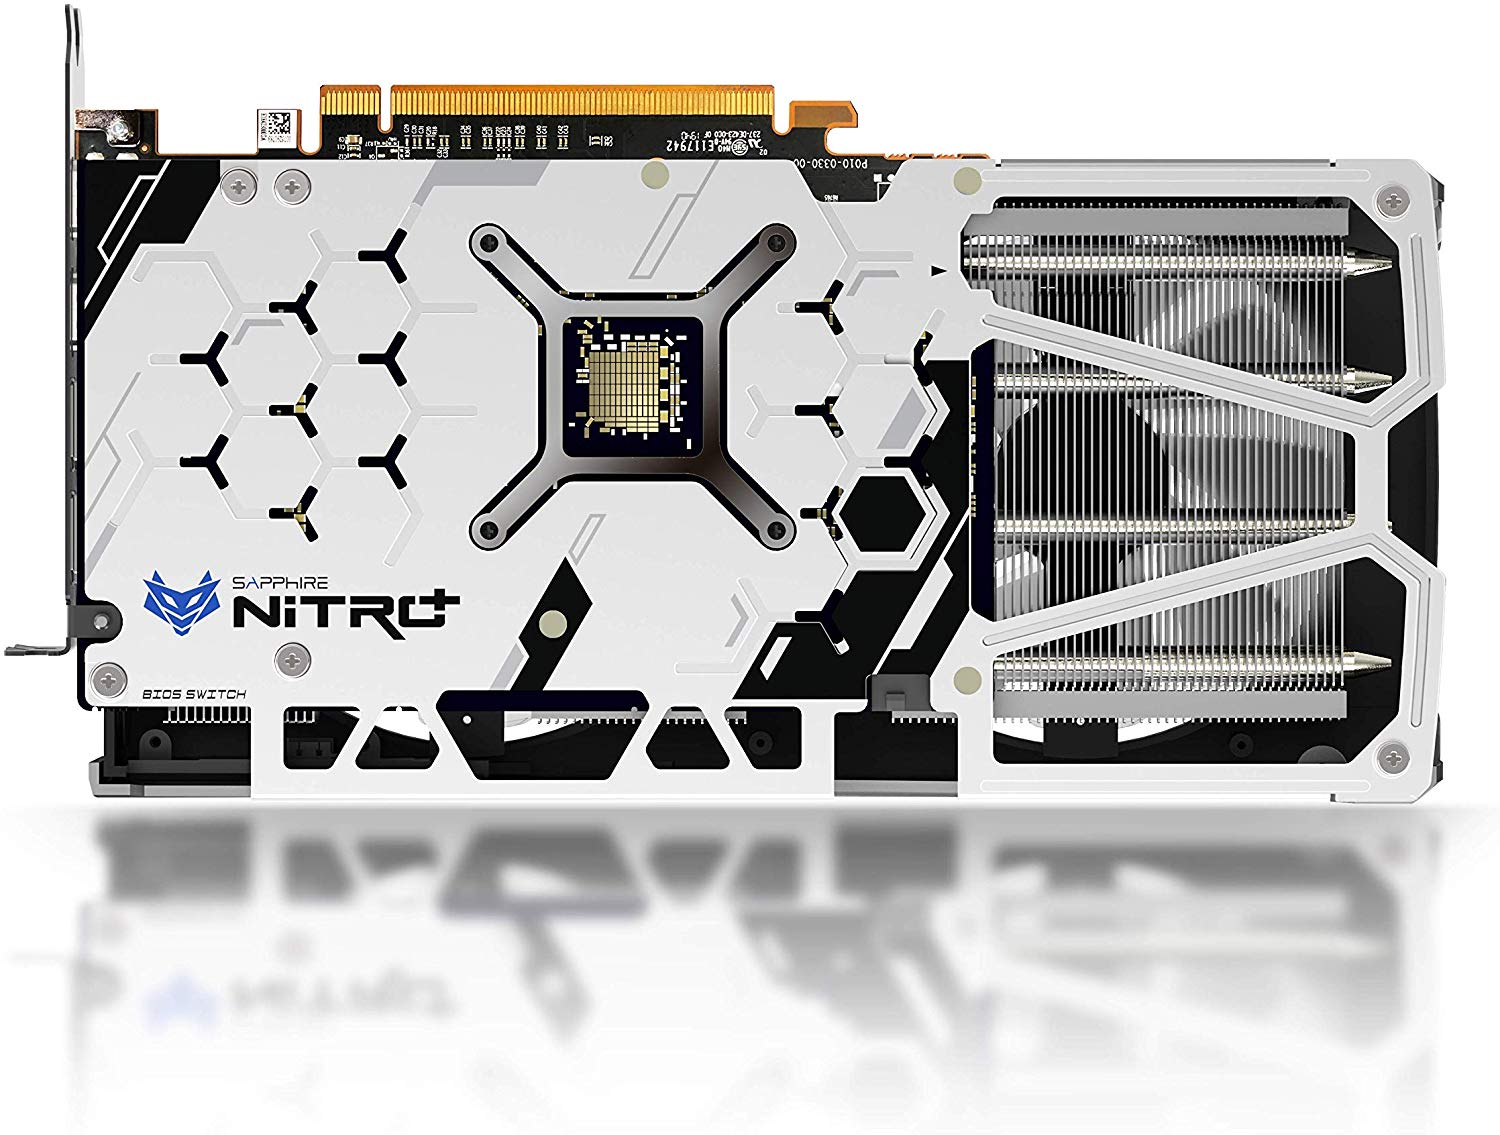 Immagine pubblicata in relazione al seguente contenuto: Foto della video card Radeon RX 5500 XT NITRO+ Special Edition di Sapphire | Nome immagine: news30249_Sapphire-Radeon-RX-5500-XT-NITRO-Plus-Special-Edition_3.jpg